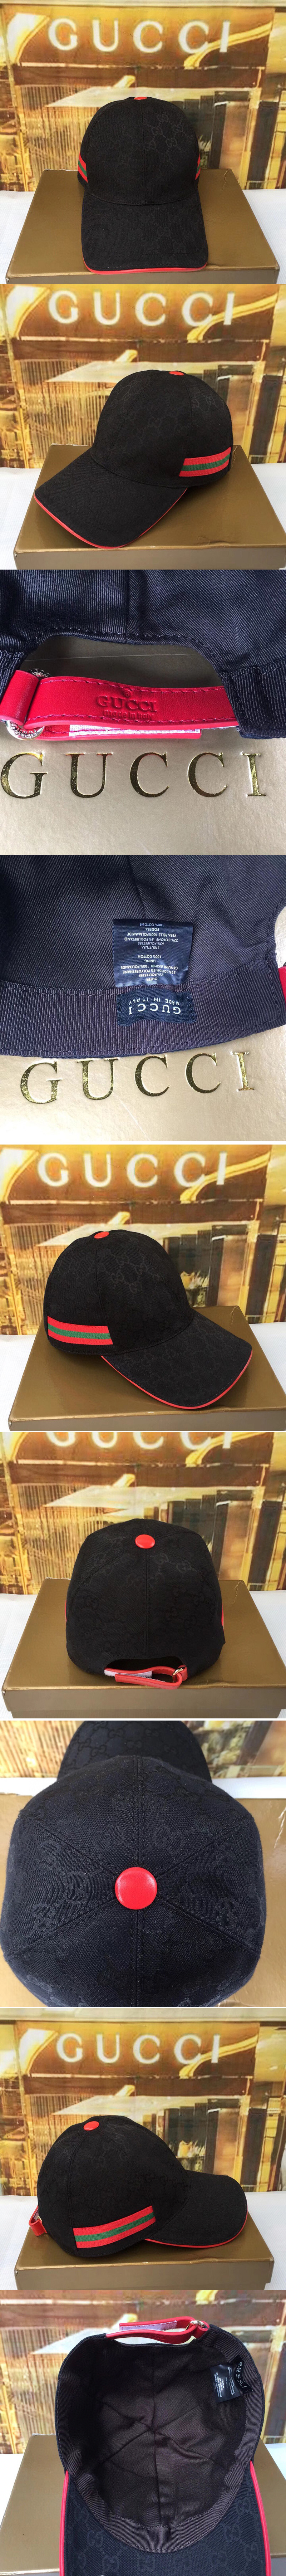 Replica Gucci 200035 Original GG canvas baseball hat with Red/Green Web In Black Original GG